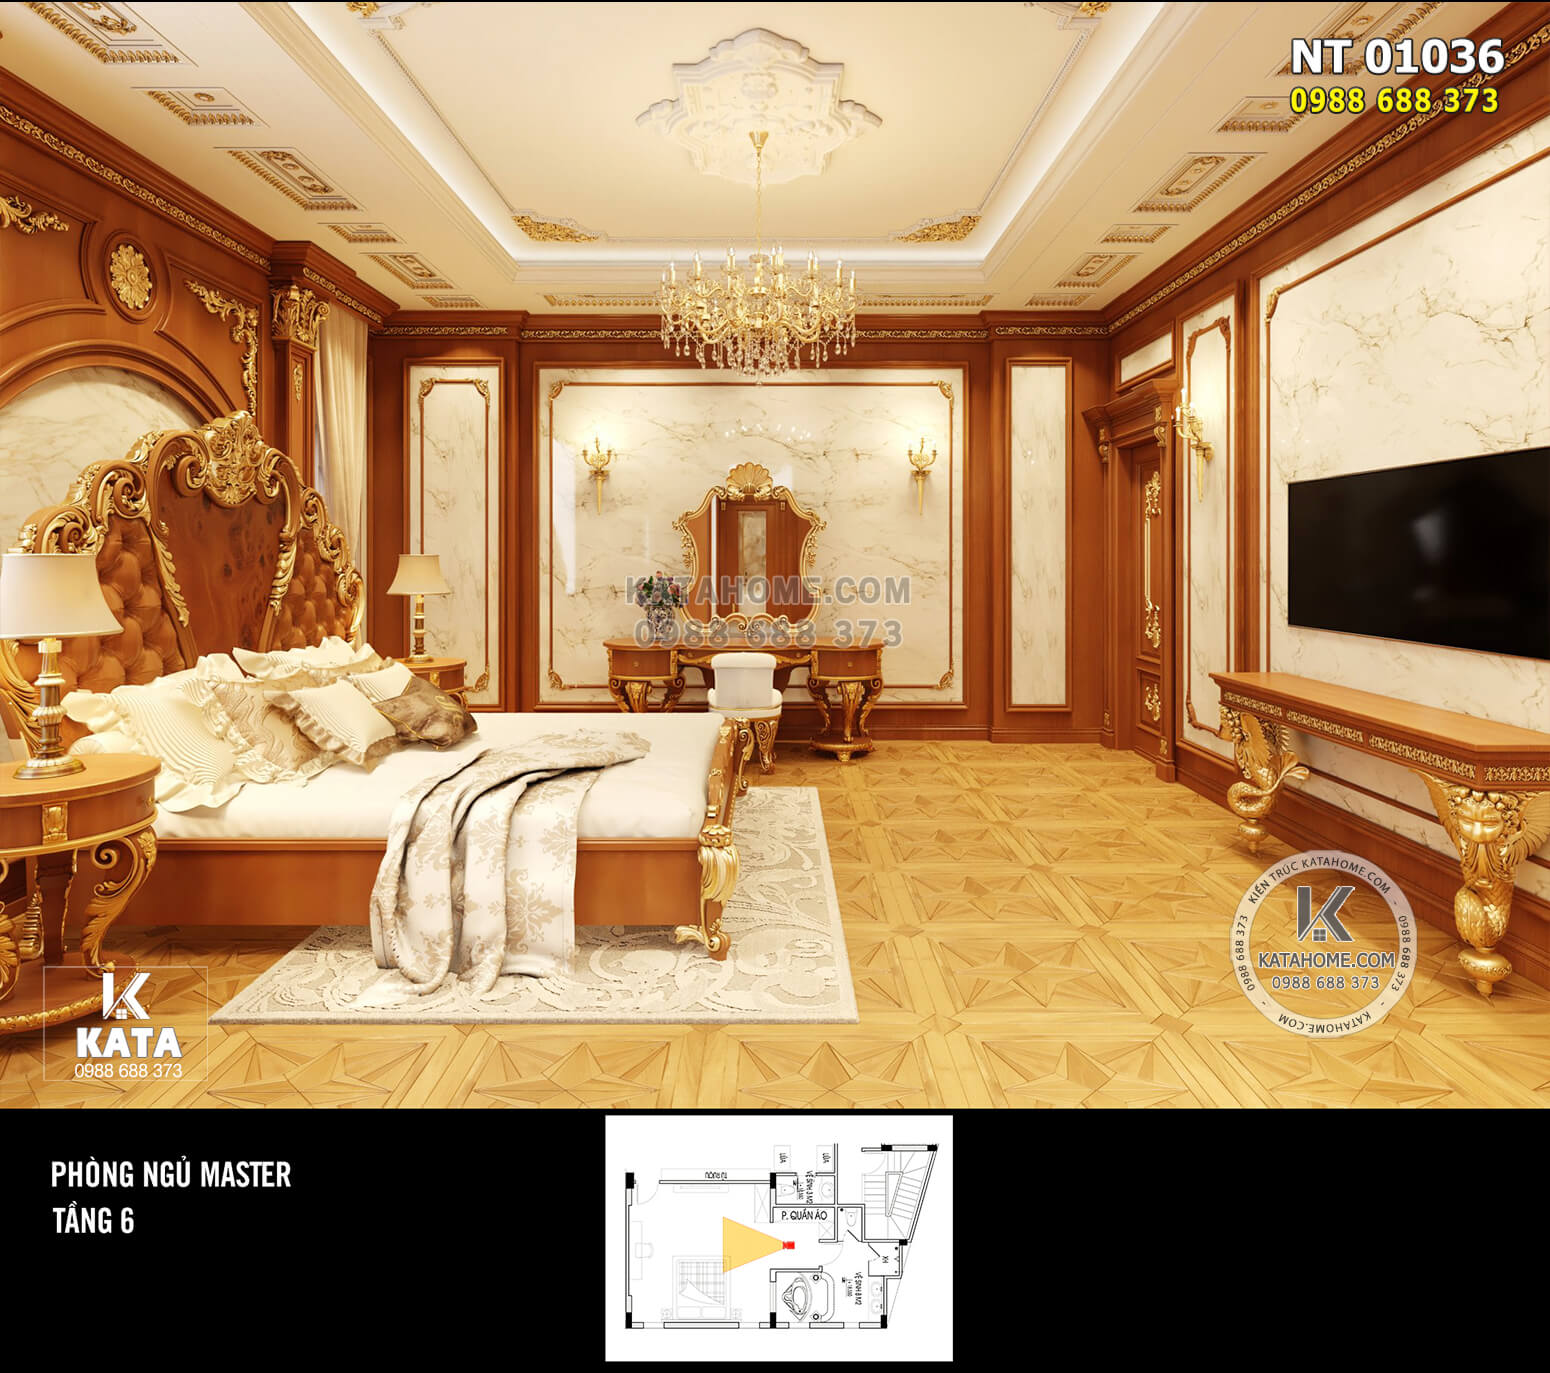 Hình ảnh: Không gian phòng ngủ Master ấm cúng với tone màu nâu gỗ